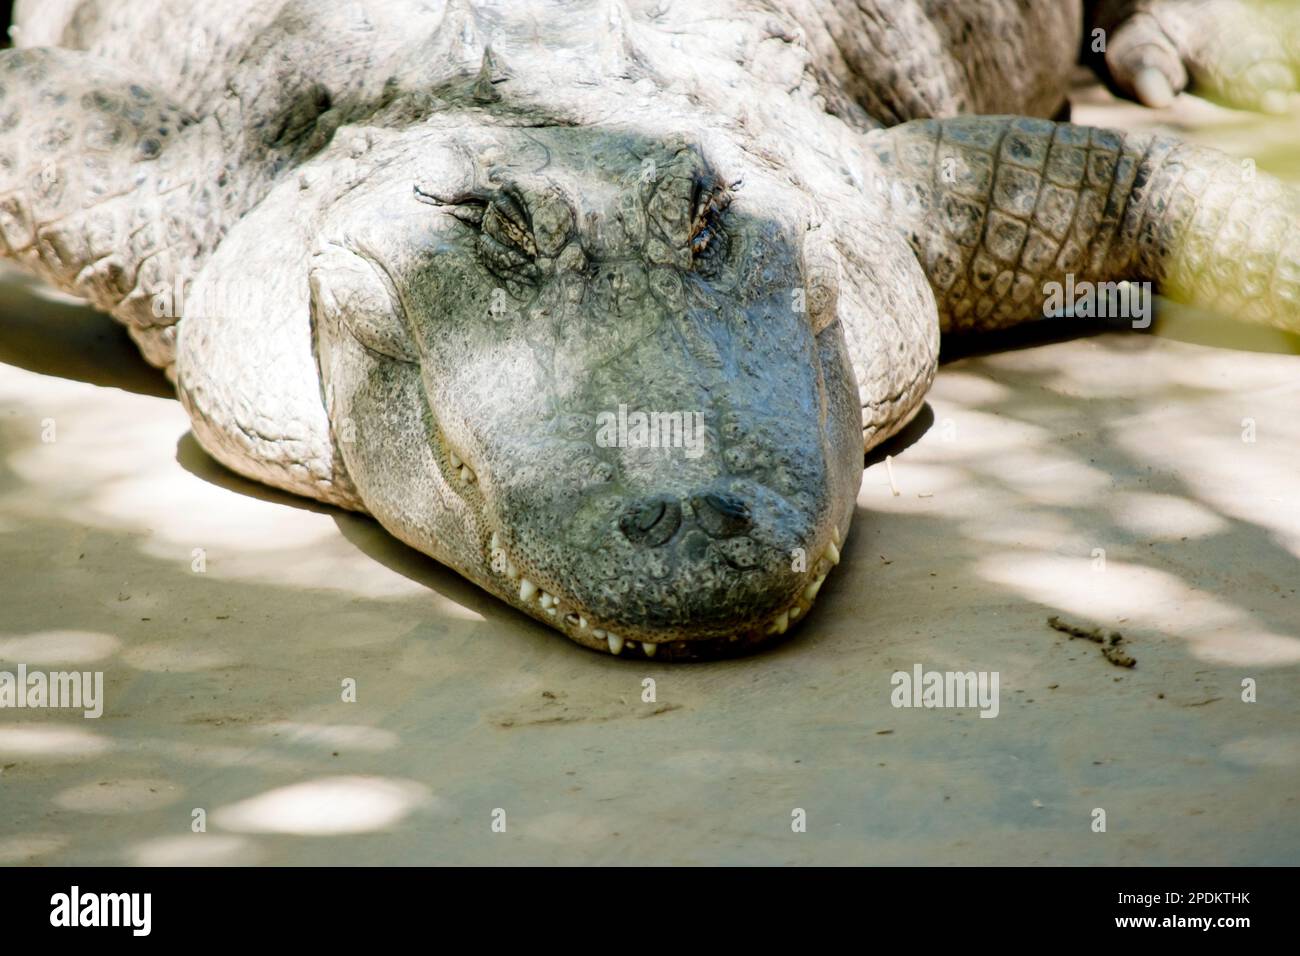 Les alligators ont un long museau arrondi qui a des narines orientées vers le haut à l'extrémité; cela permet de respirer pendant que le reste du corps est underwa Banque D'Images